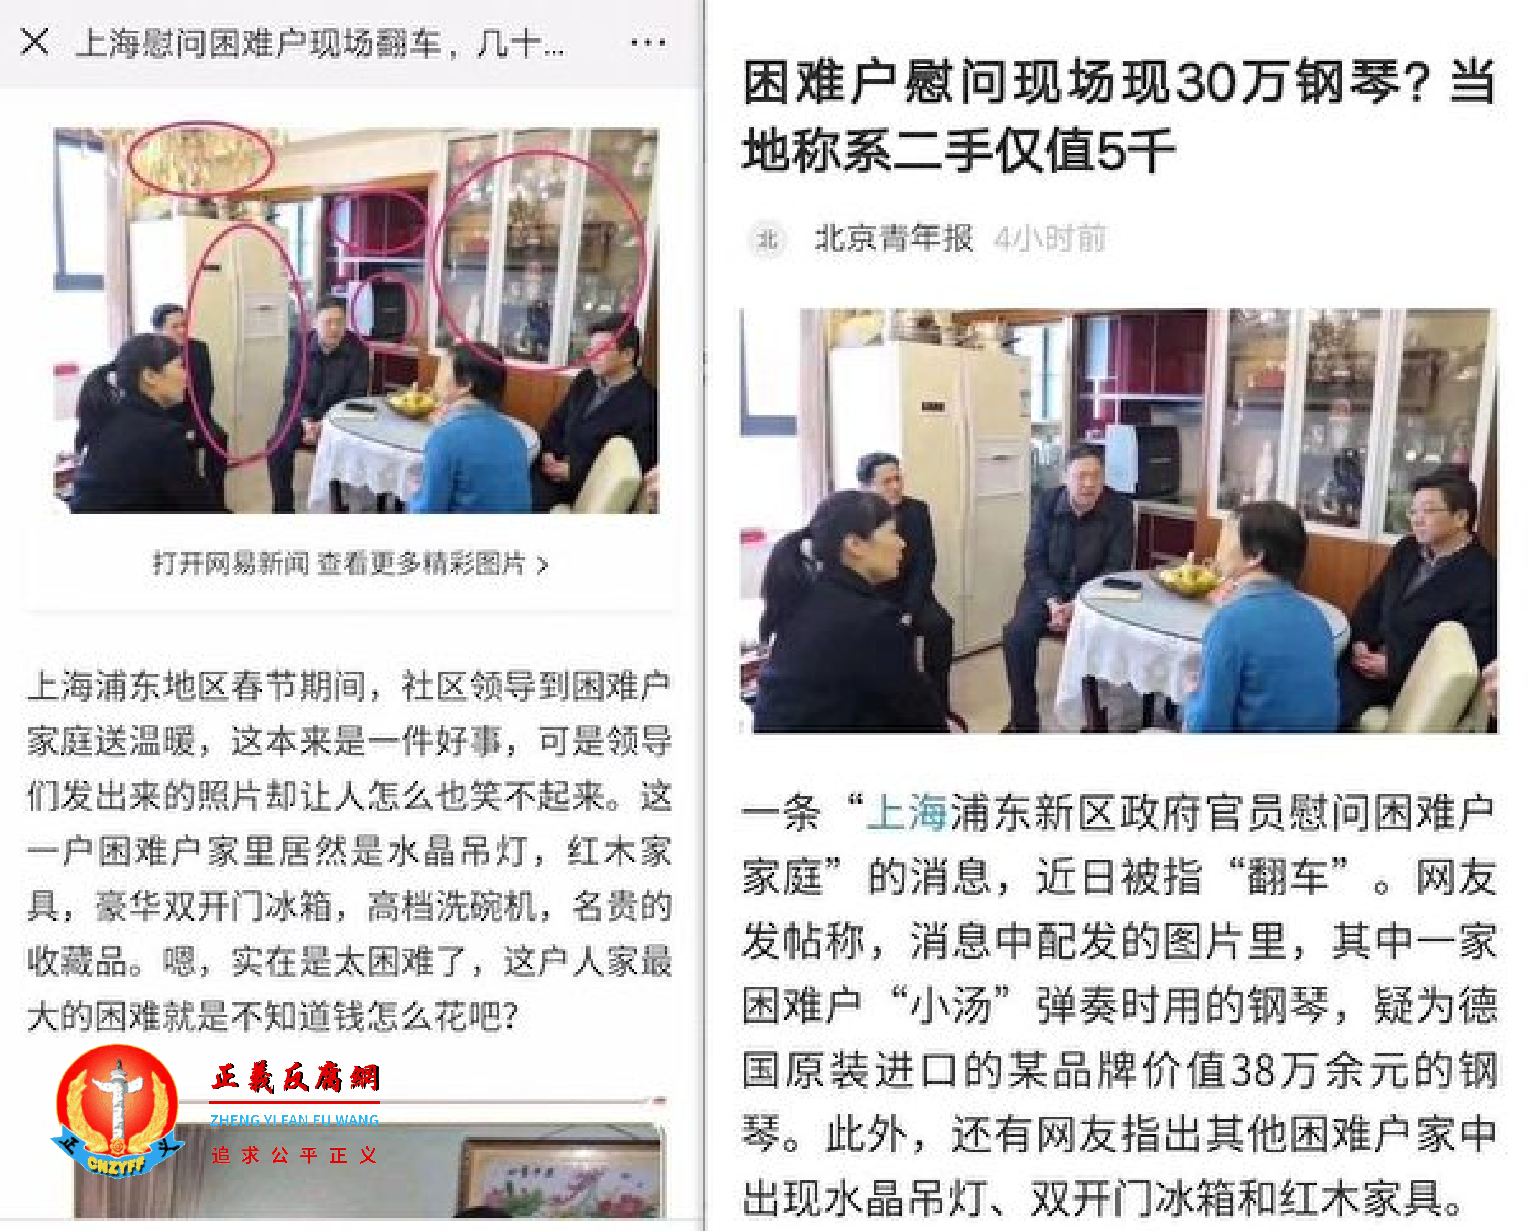 新华社文章引述“上海浦东一困难户家里出现双开门冰箱”事件，指这些贫困户并非“家徒四壁”，证明当地“经济水平提高了”。.png